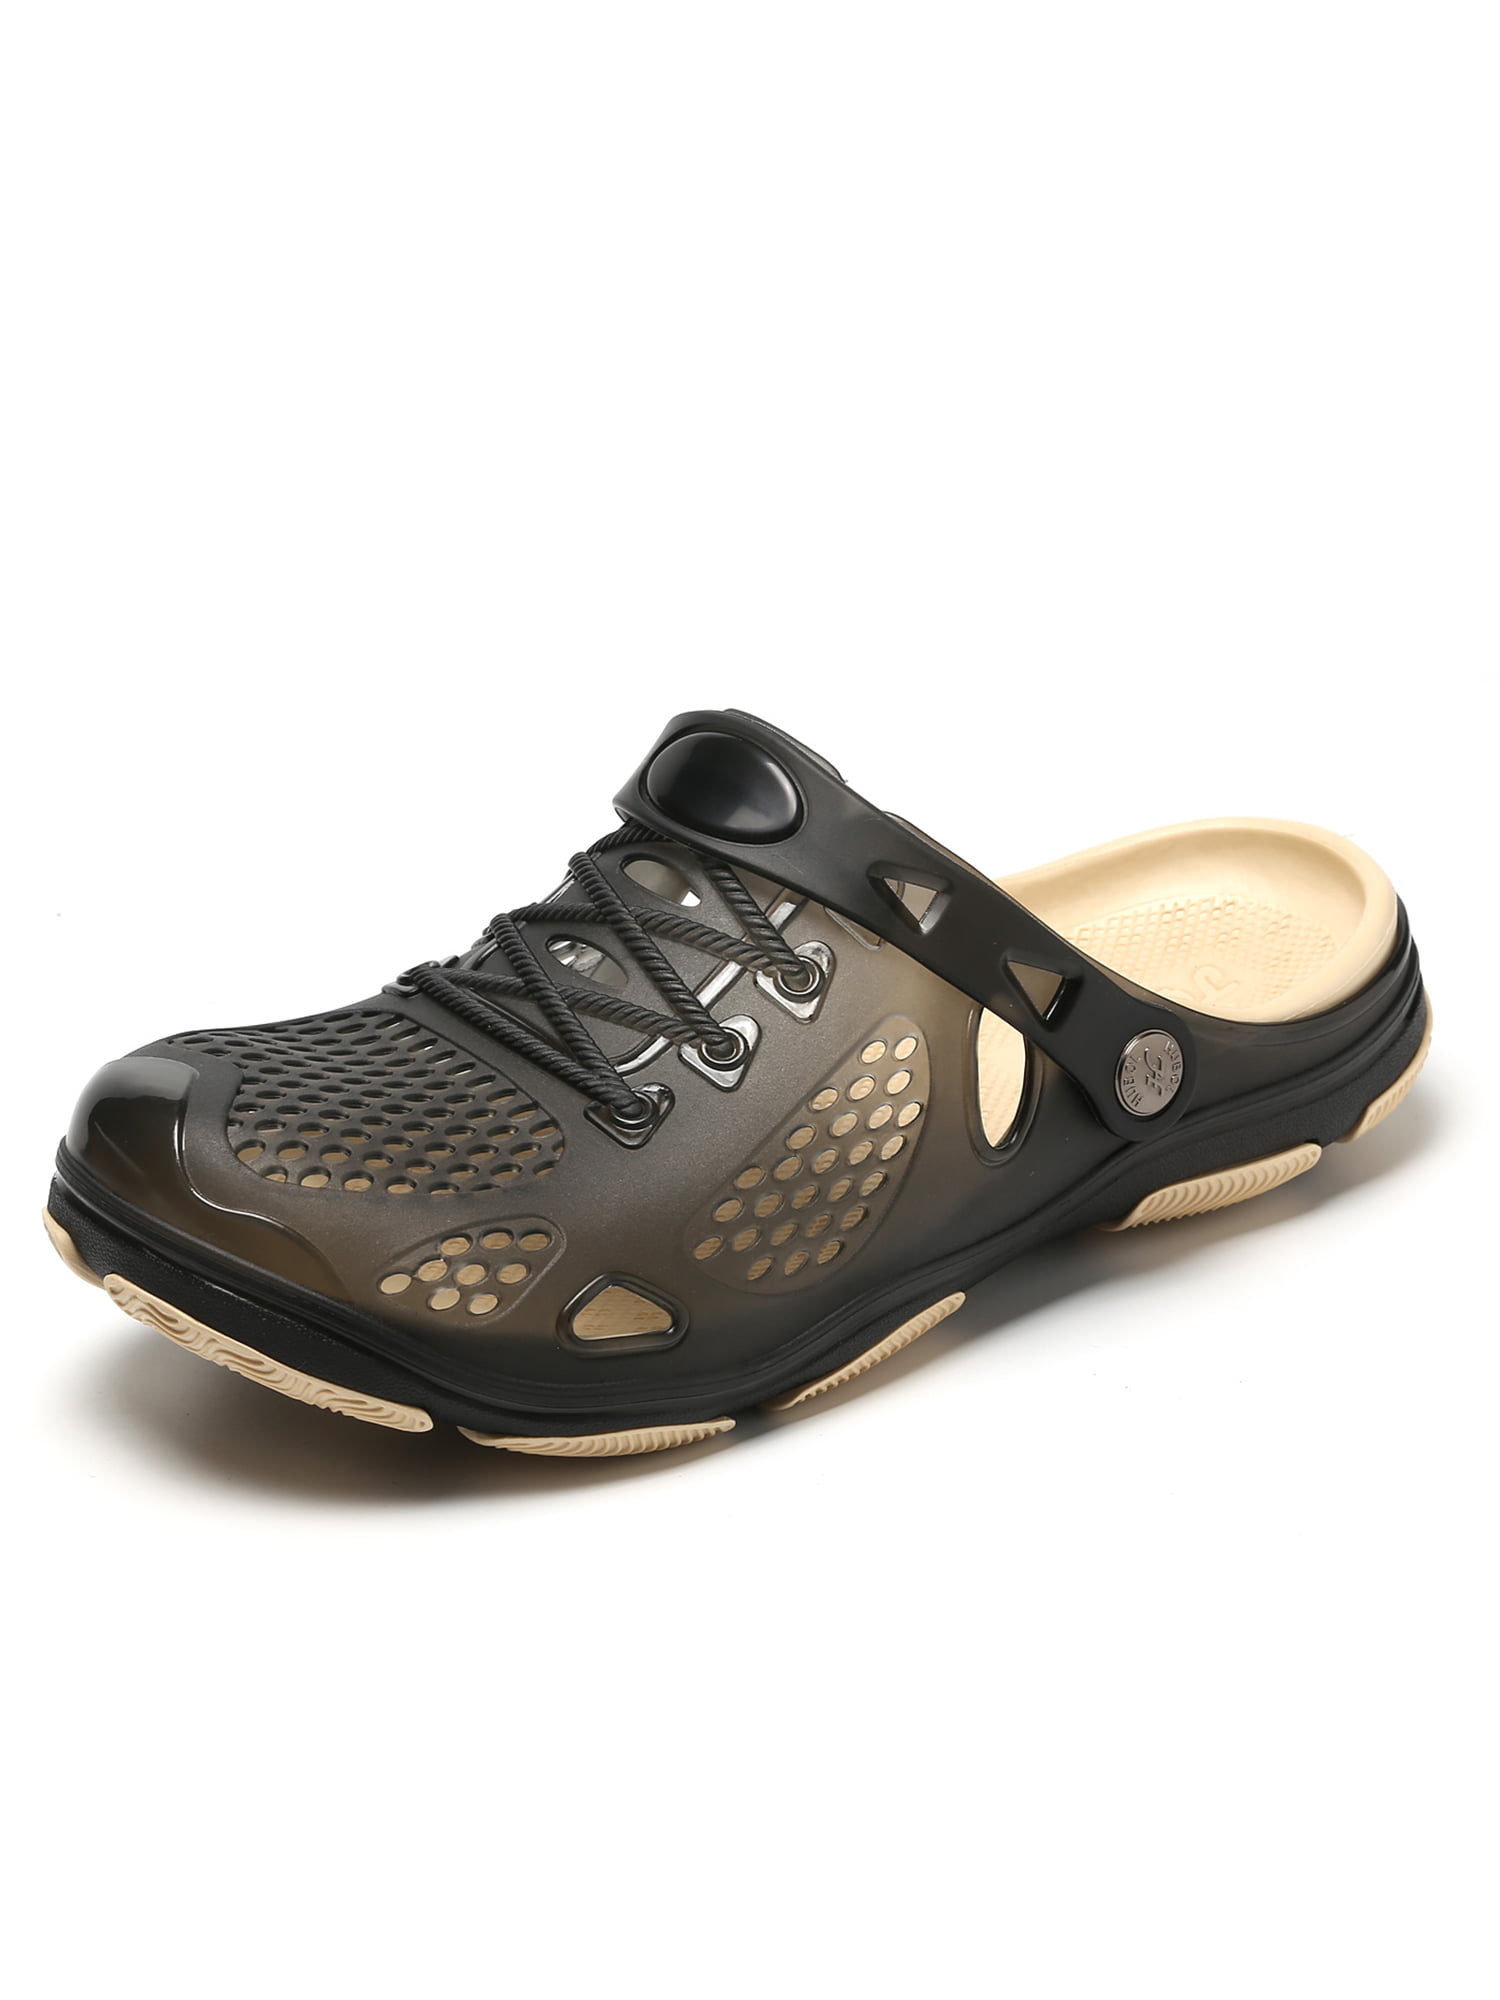 Unisex Outdoor Sport Water Shoes Comfort Walking Slippers Quick Drying Garden Clogs Sintiz Beach Sandals